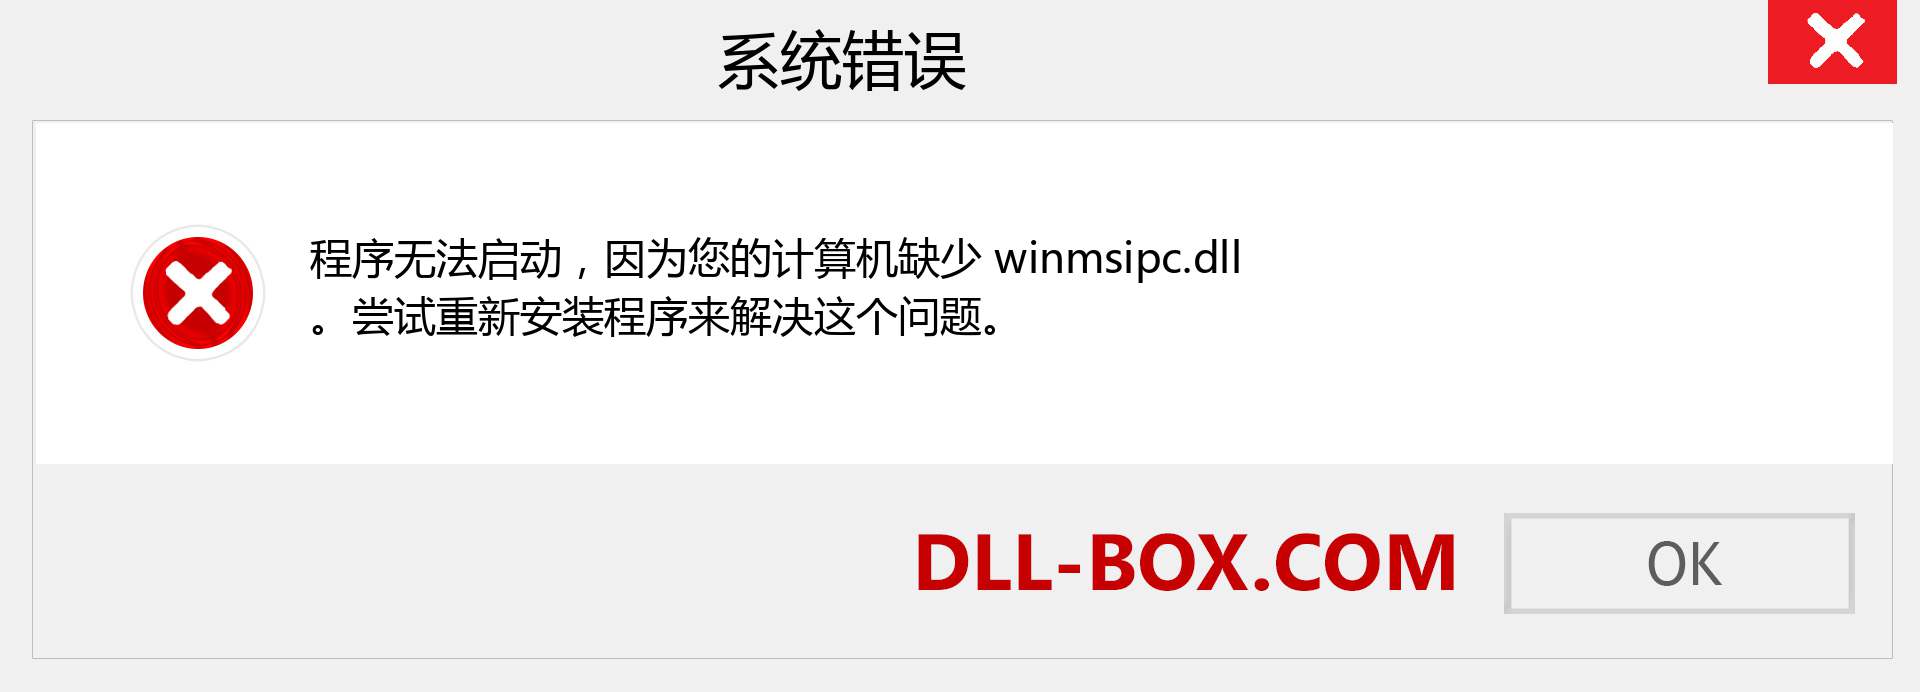 winmsipc.dll 文件丢失？。 适用于 Windows 7、8、10 的下载 - 修复 Windows、照片、图像上的 winmsipc dll 丢失错误